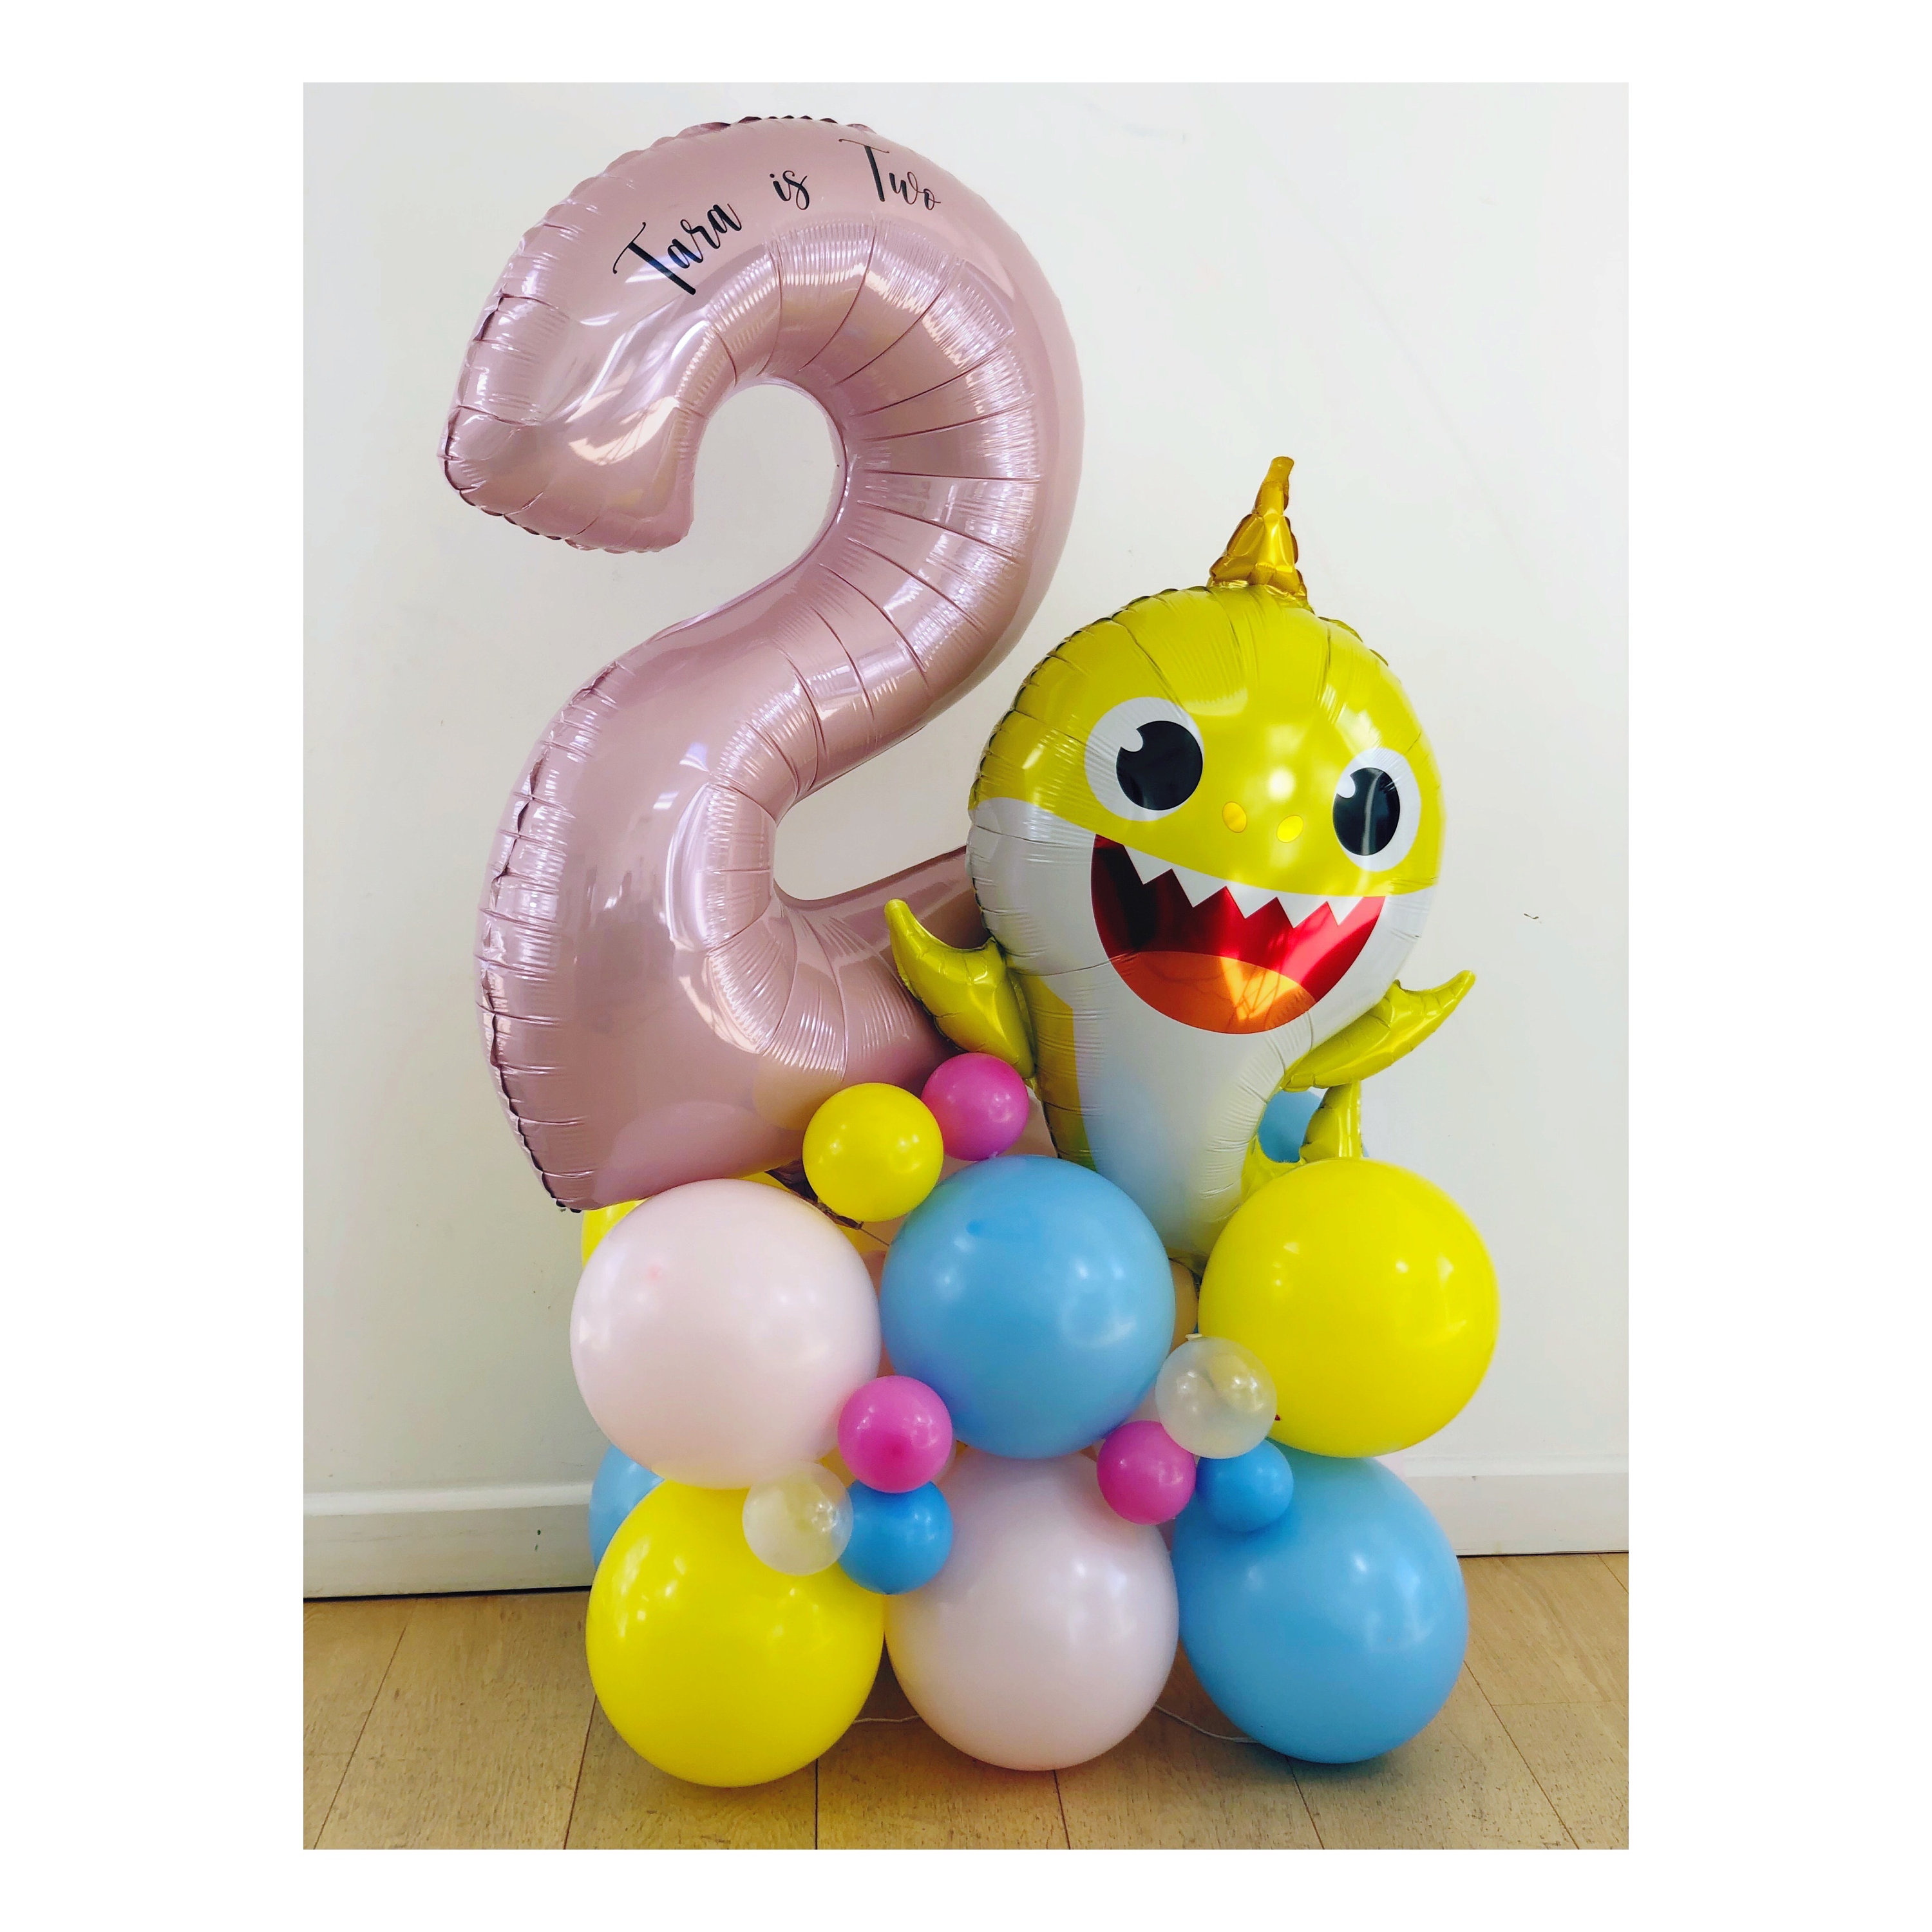 DIY Pink Baby Shark Balloon Sculpture